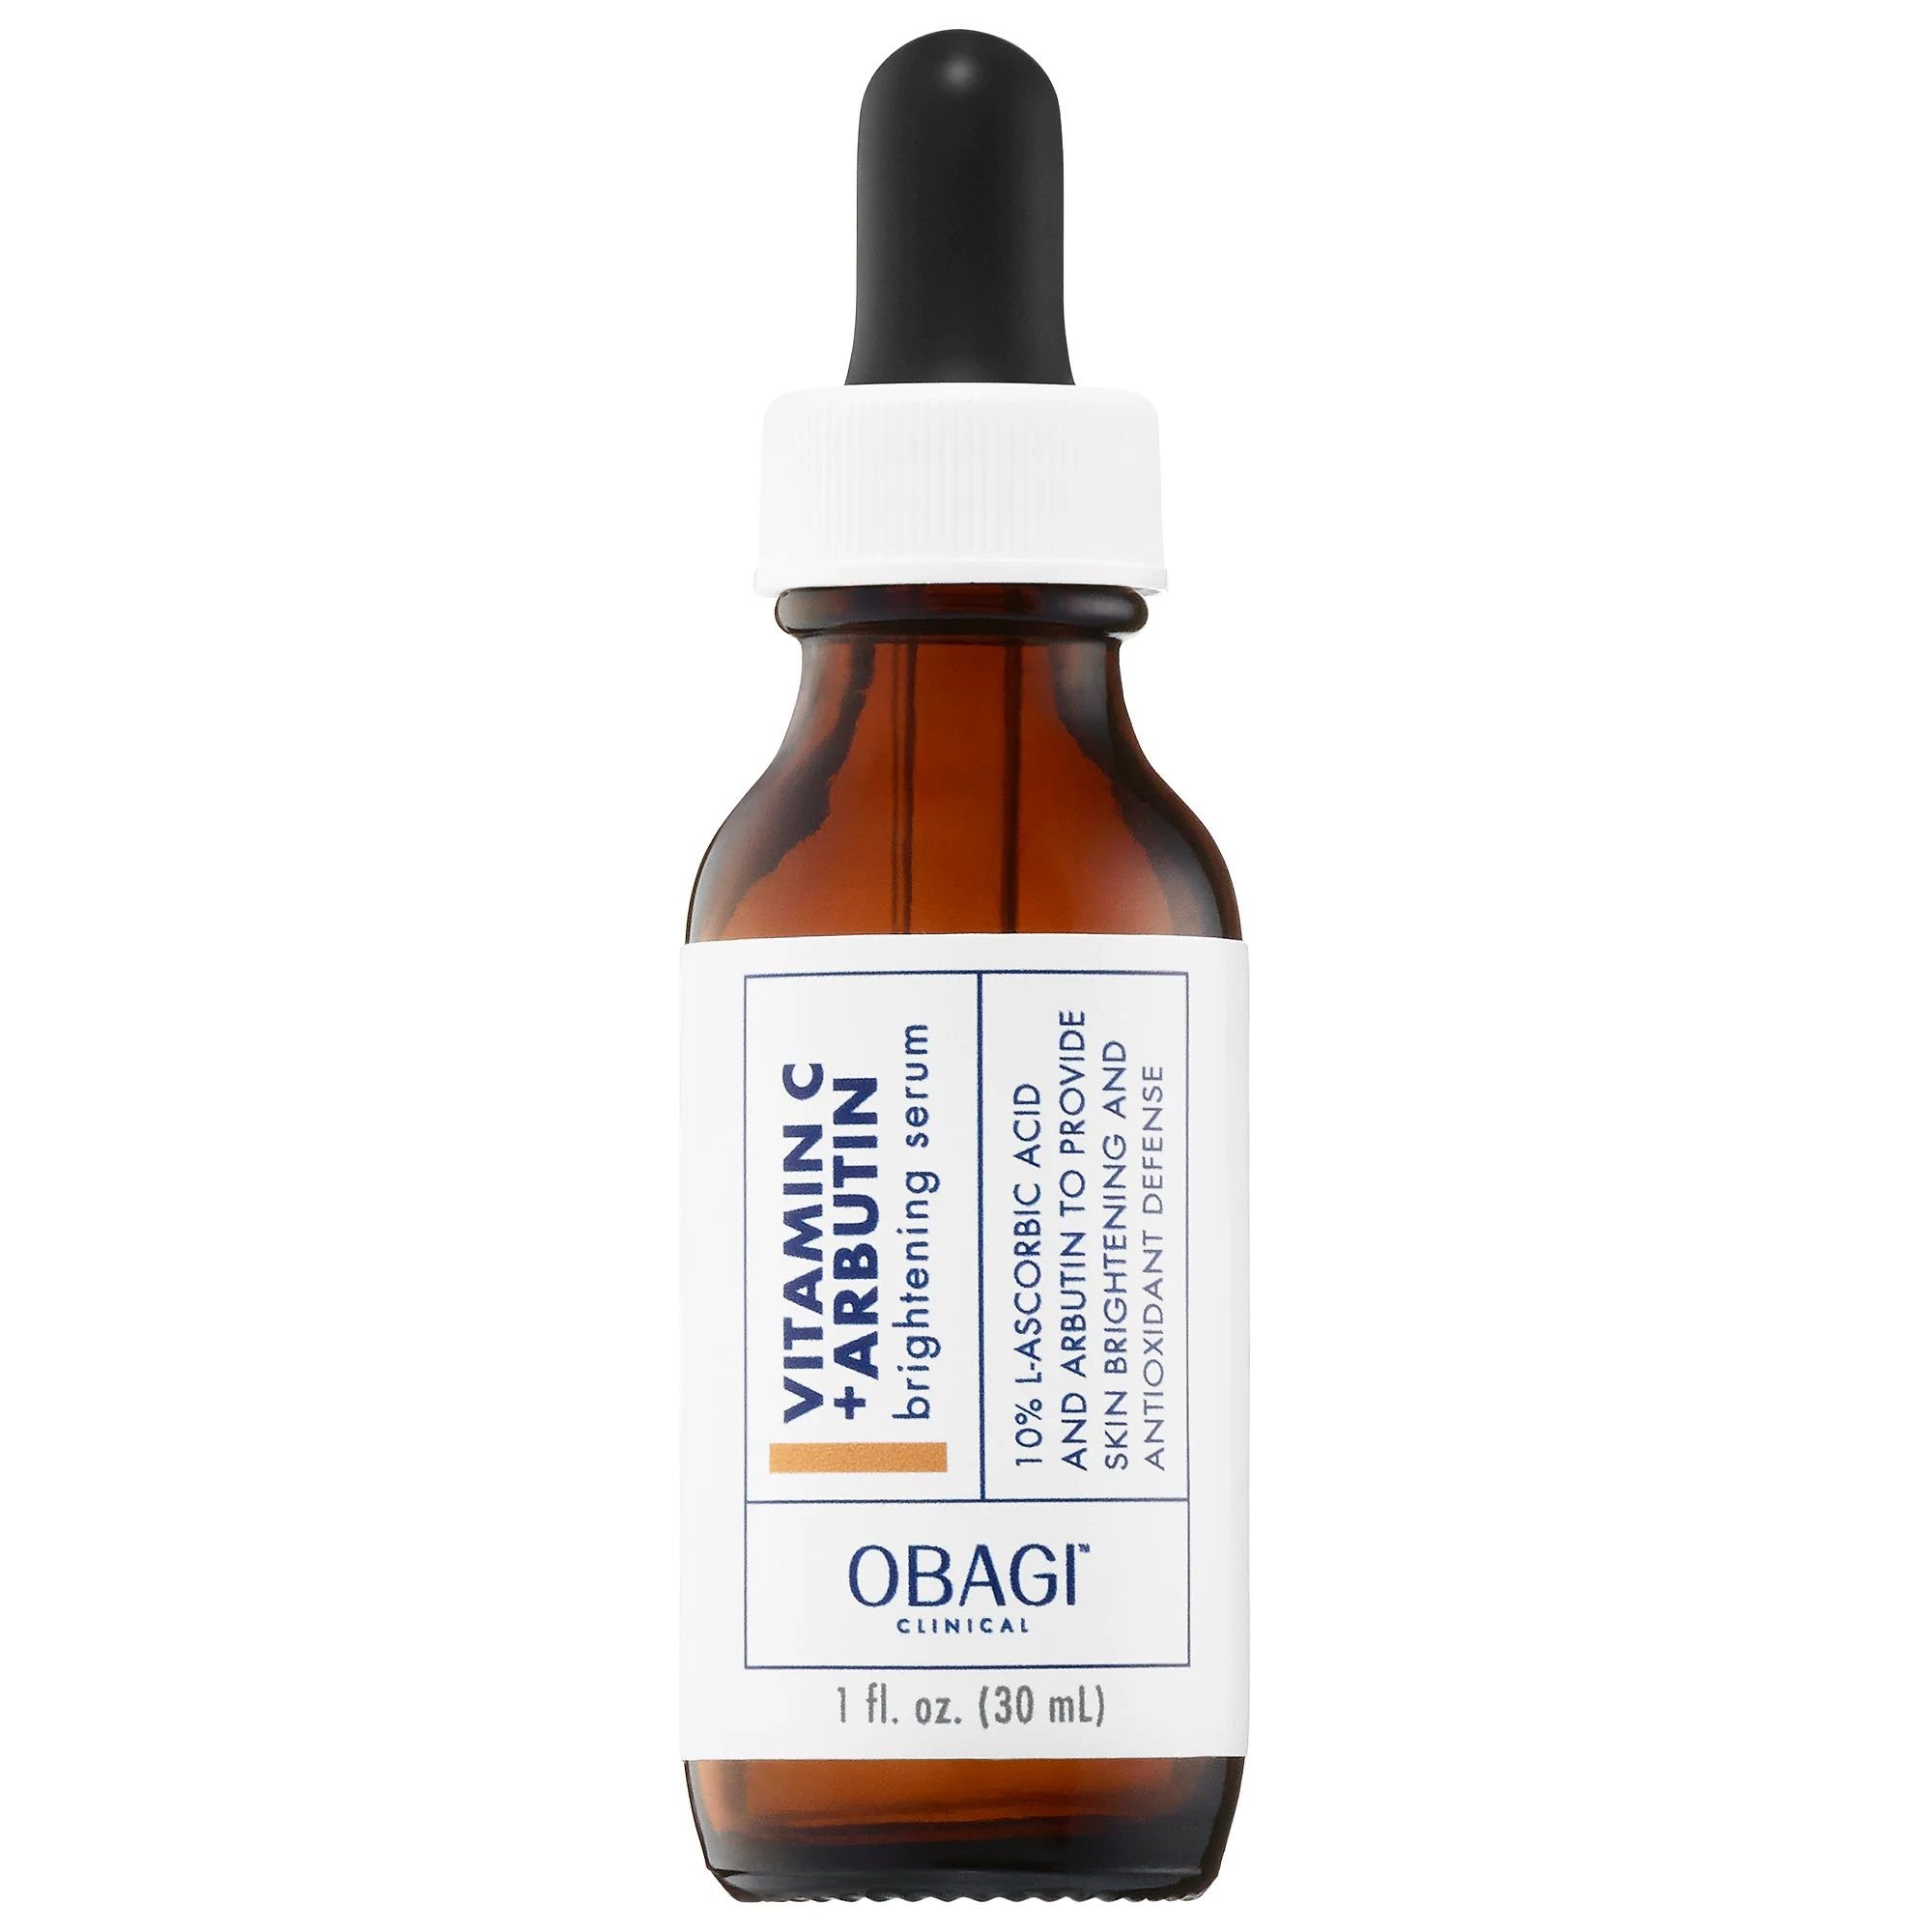  Tinh chất dưỡng sáng da - OBAGI CLINICAL Vitamin C+ Arbutin Brightening Serum (30ml) 